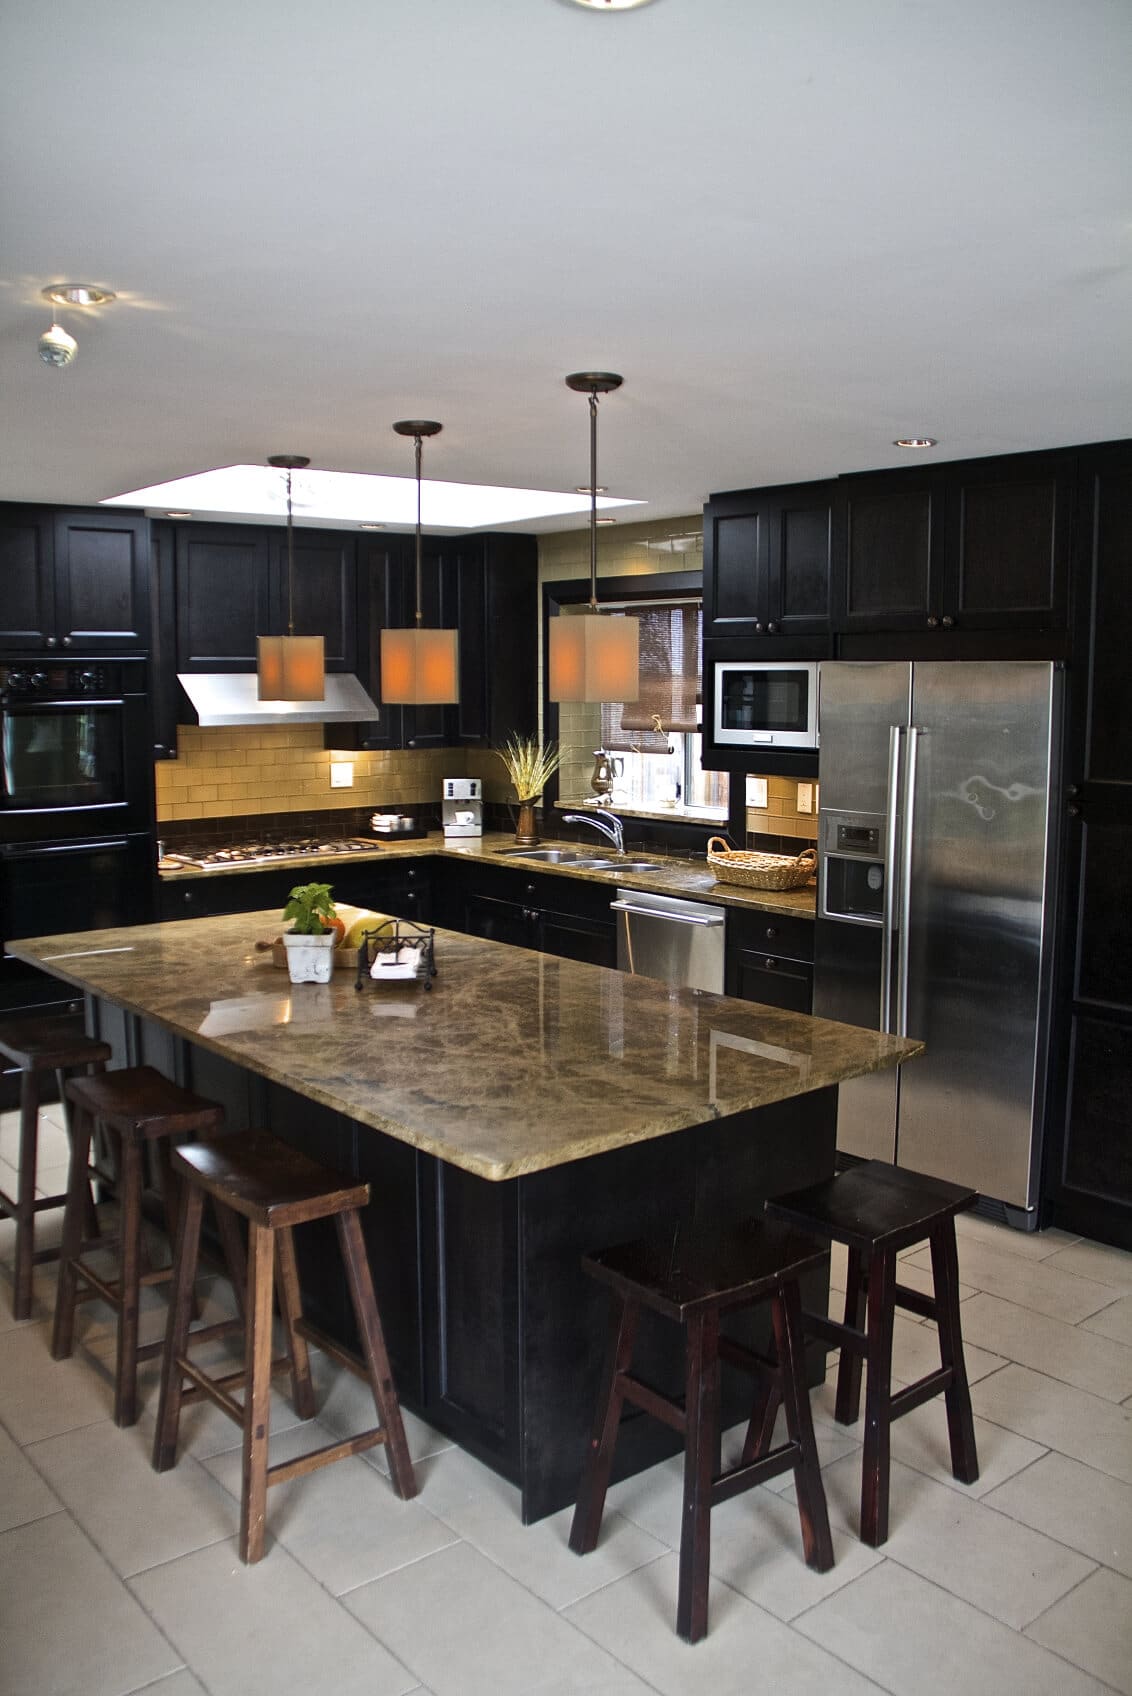 Escolha de materiais duráveis para a cozinha preta completa